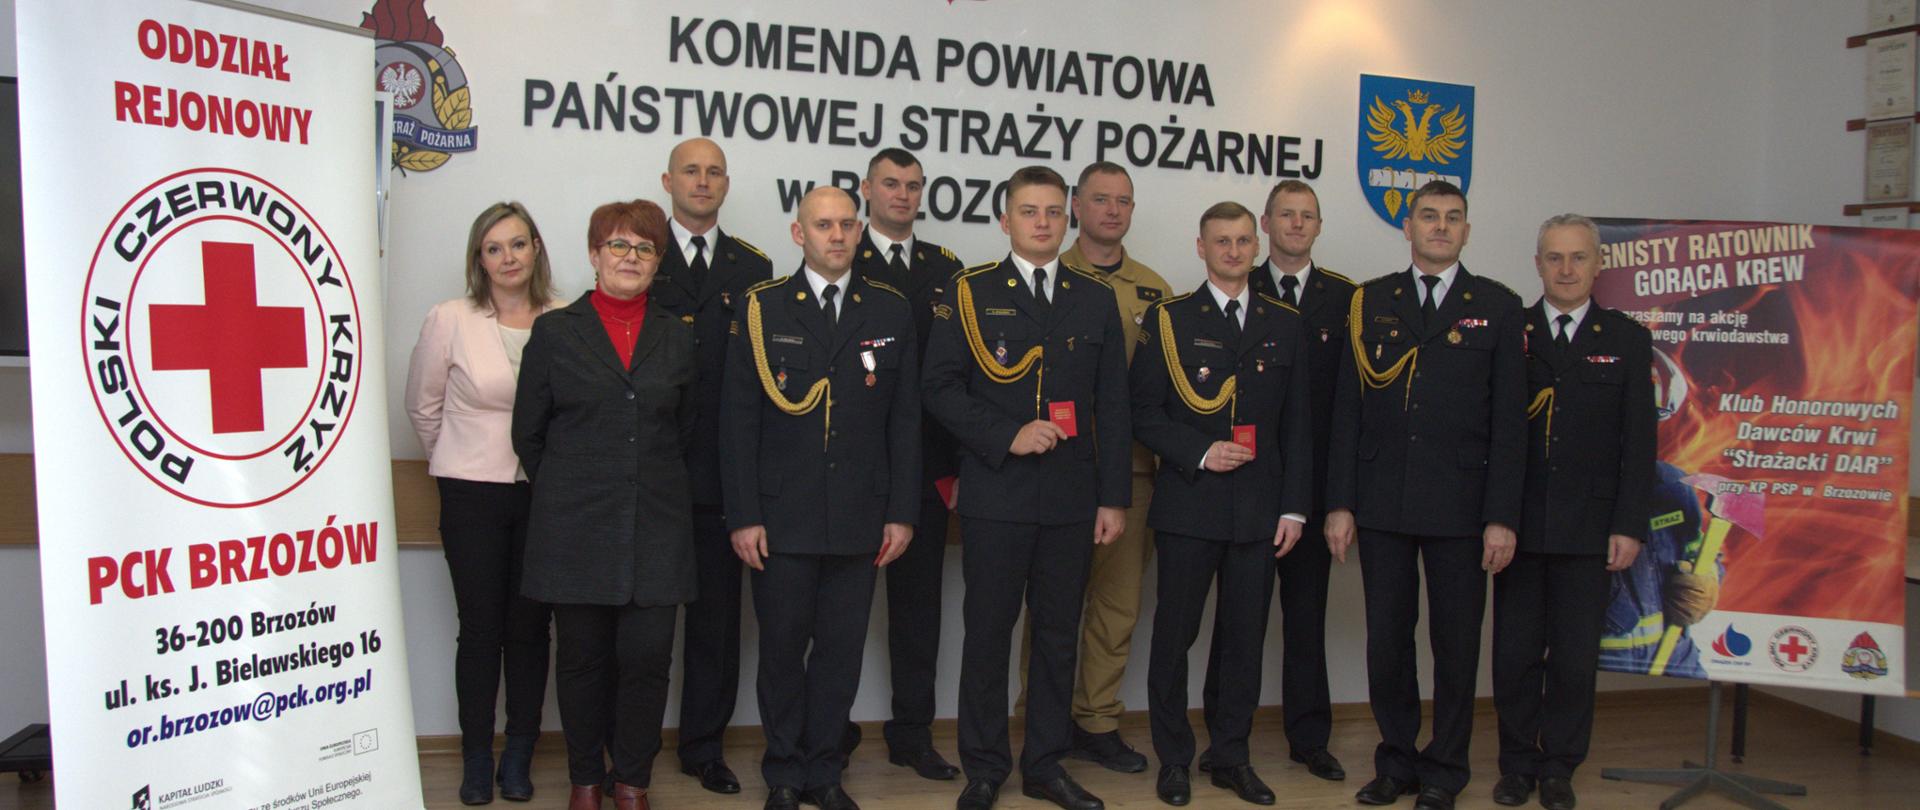 Kolorowa fotografia wykonana w świetlicy Komendy Powiatowej PSP w Brzozowie. Przedstawia grupę strażaków w mundurach wyjściowych i osoby cywilne po wręczeniu odznaczeń Honorowych Dawców Krwi.